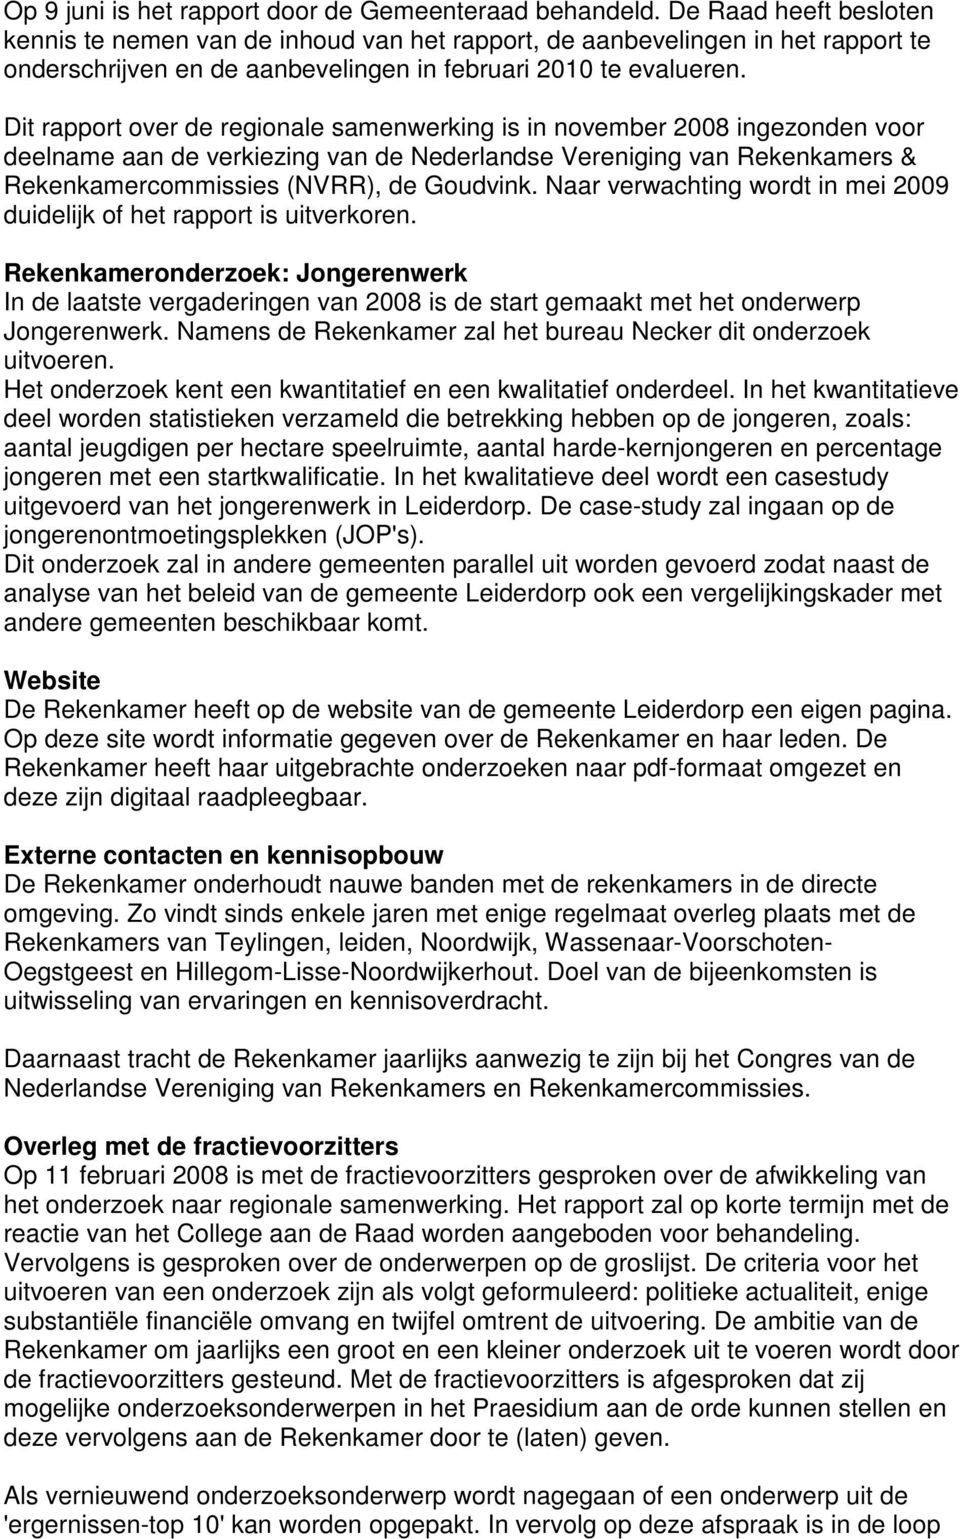 Dit rapport over de regionale samenwerking is in november 2008 ingezonden voor deelname aan de verkiezing van de Nederlandse Vereniging van Rekenkamers & Rekenkamercommissies (NVRR), de Goudvink.